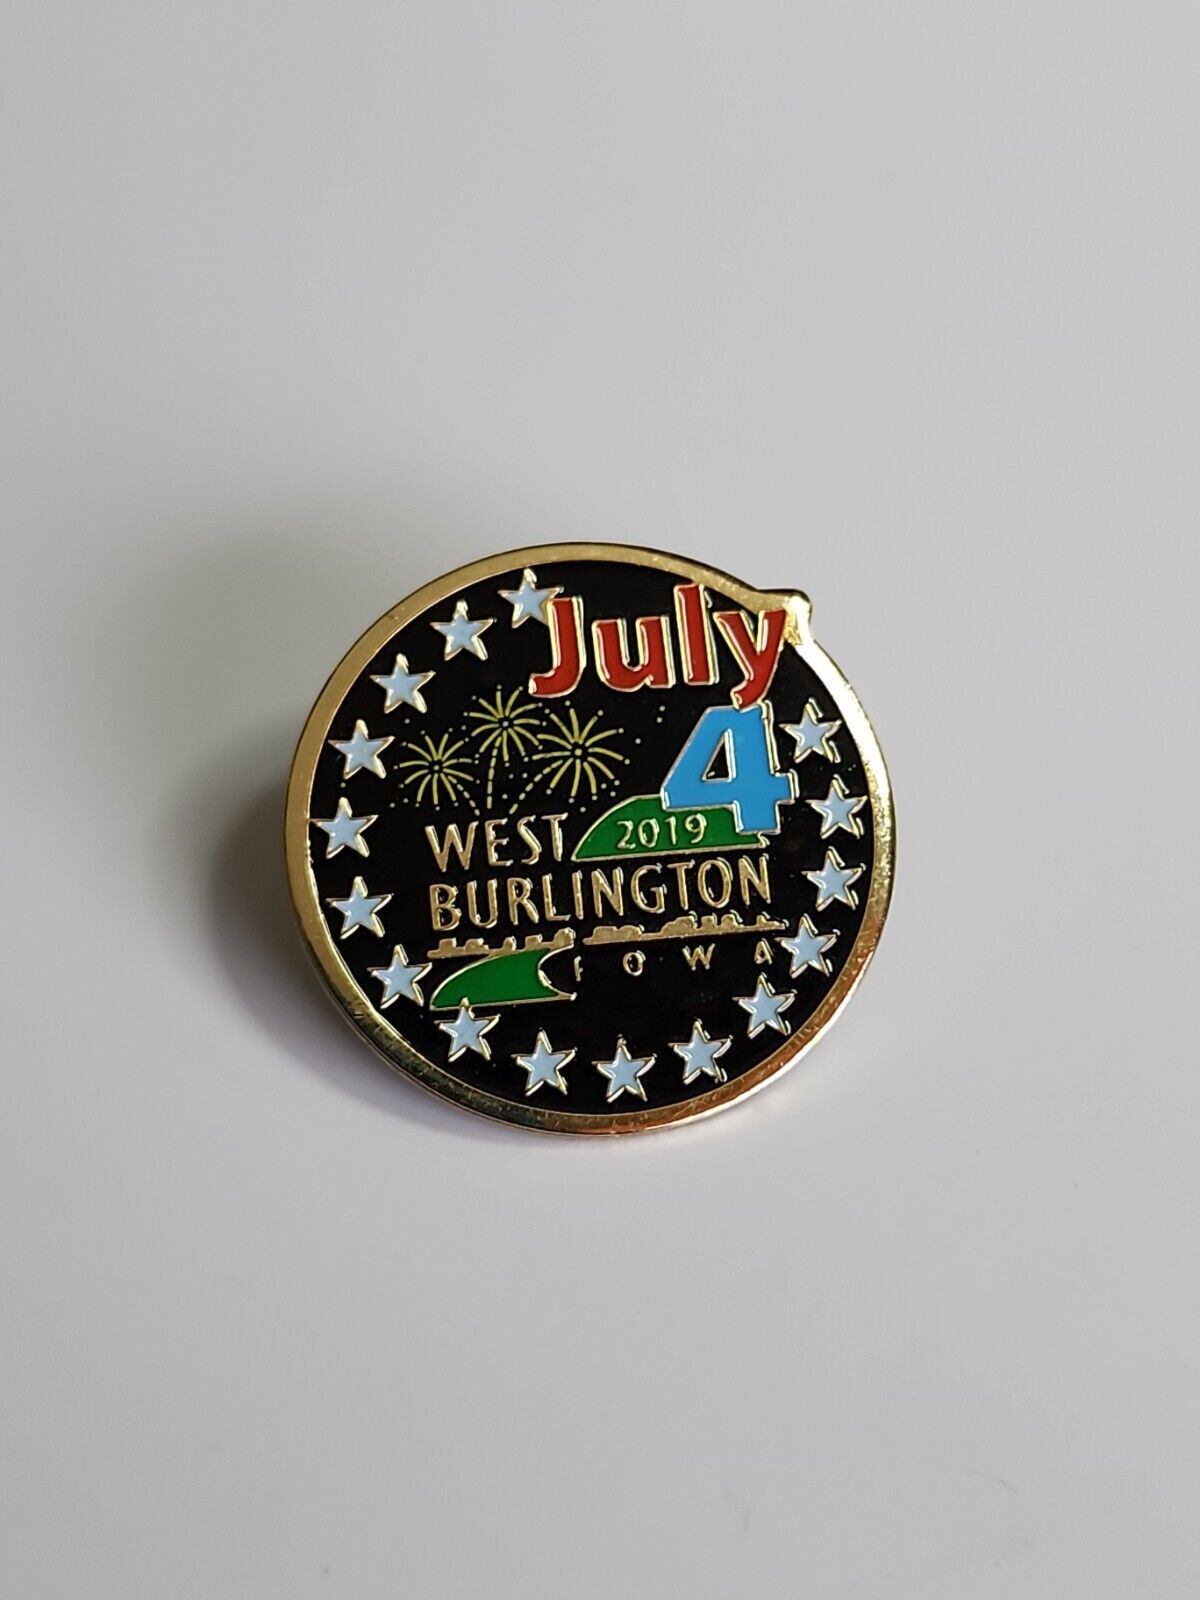 West Burlington Iowa July 4 2019 Lapel Hat Jacket Pin